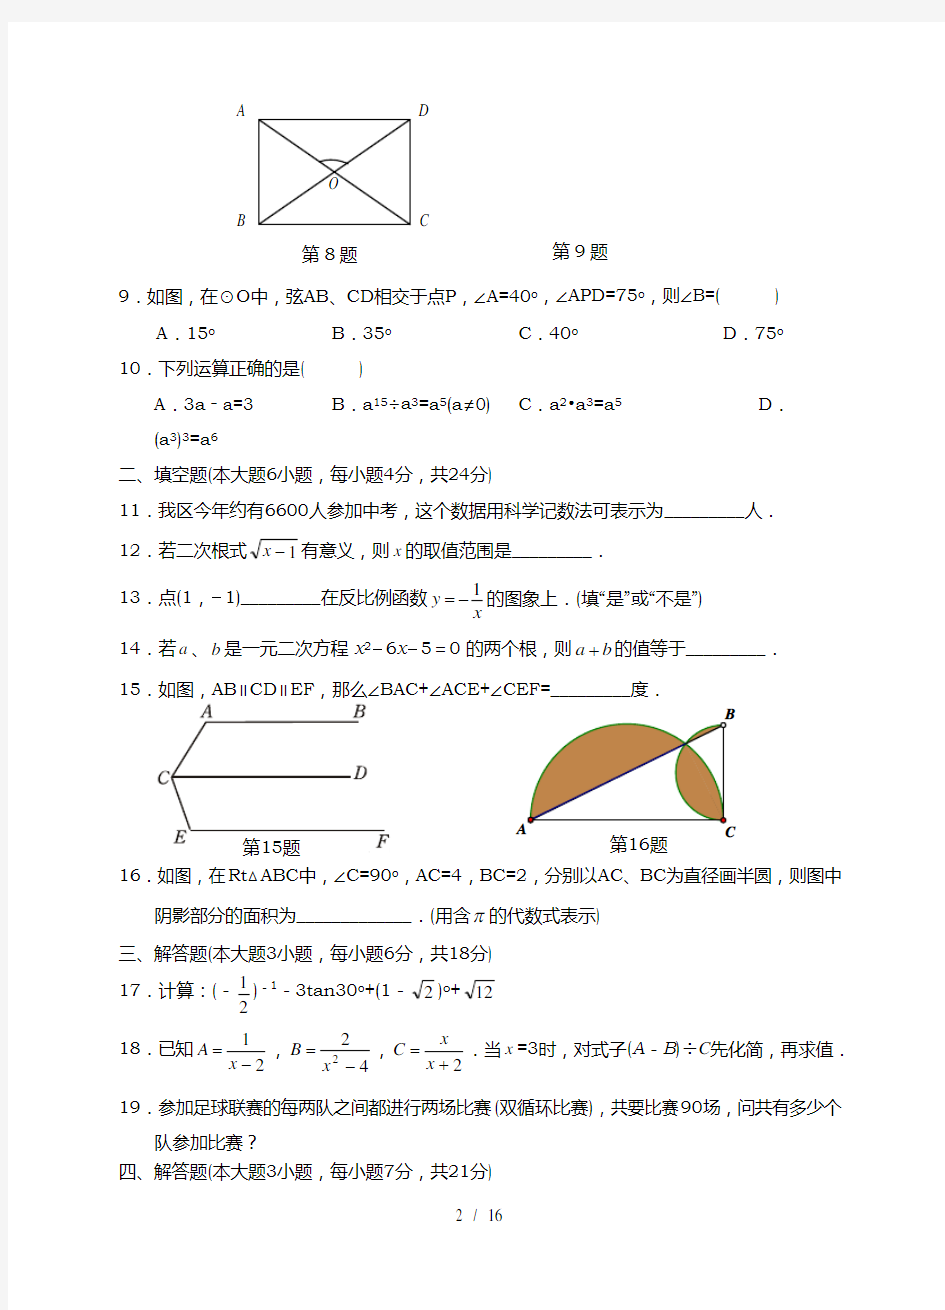 2018年广东省中考数学模拟试题及答题卡答案